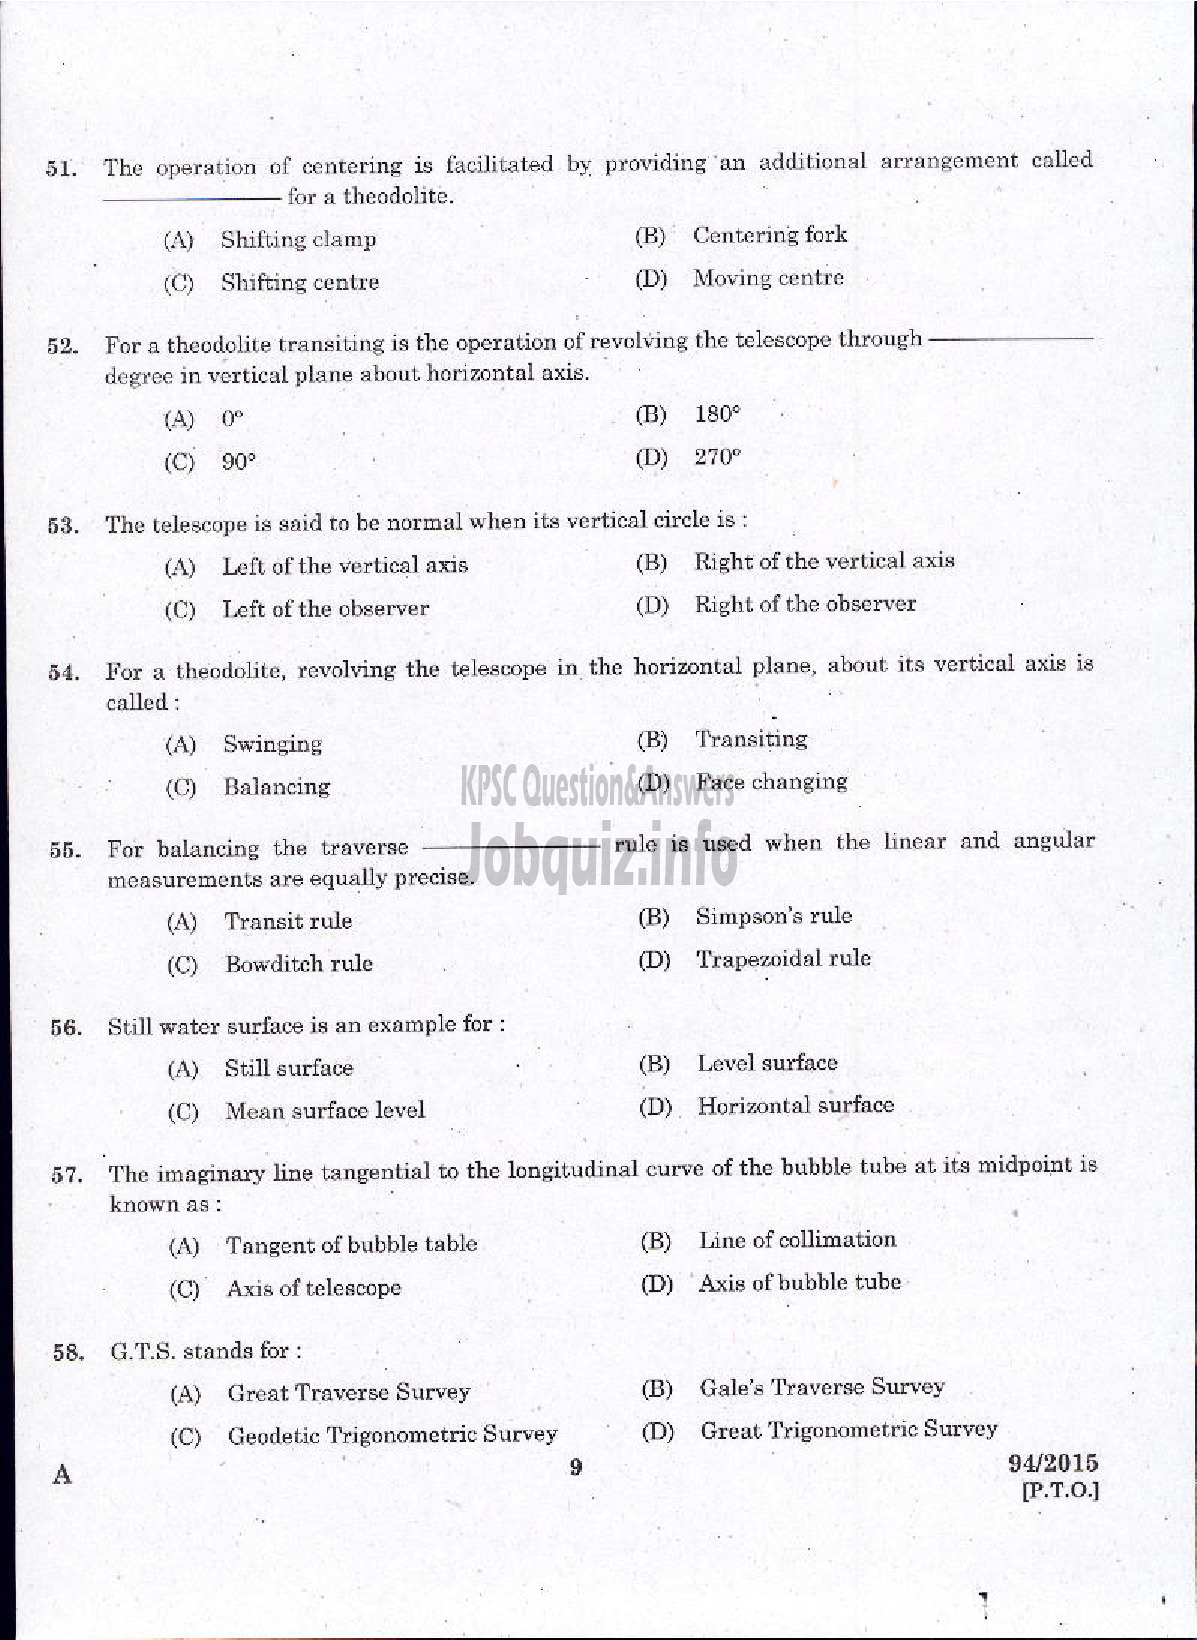 Kerala PSC Question Paper - SURVEYOR GR II HYDROGEOLOGY BRANCH GROUND WATER-7